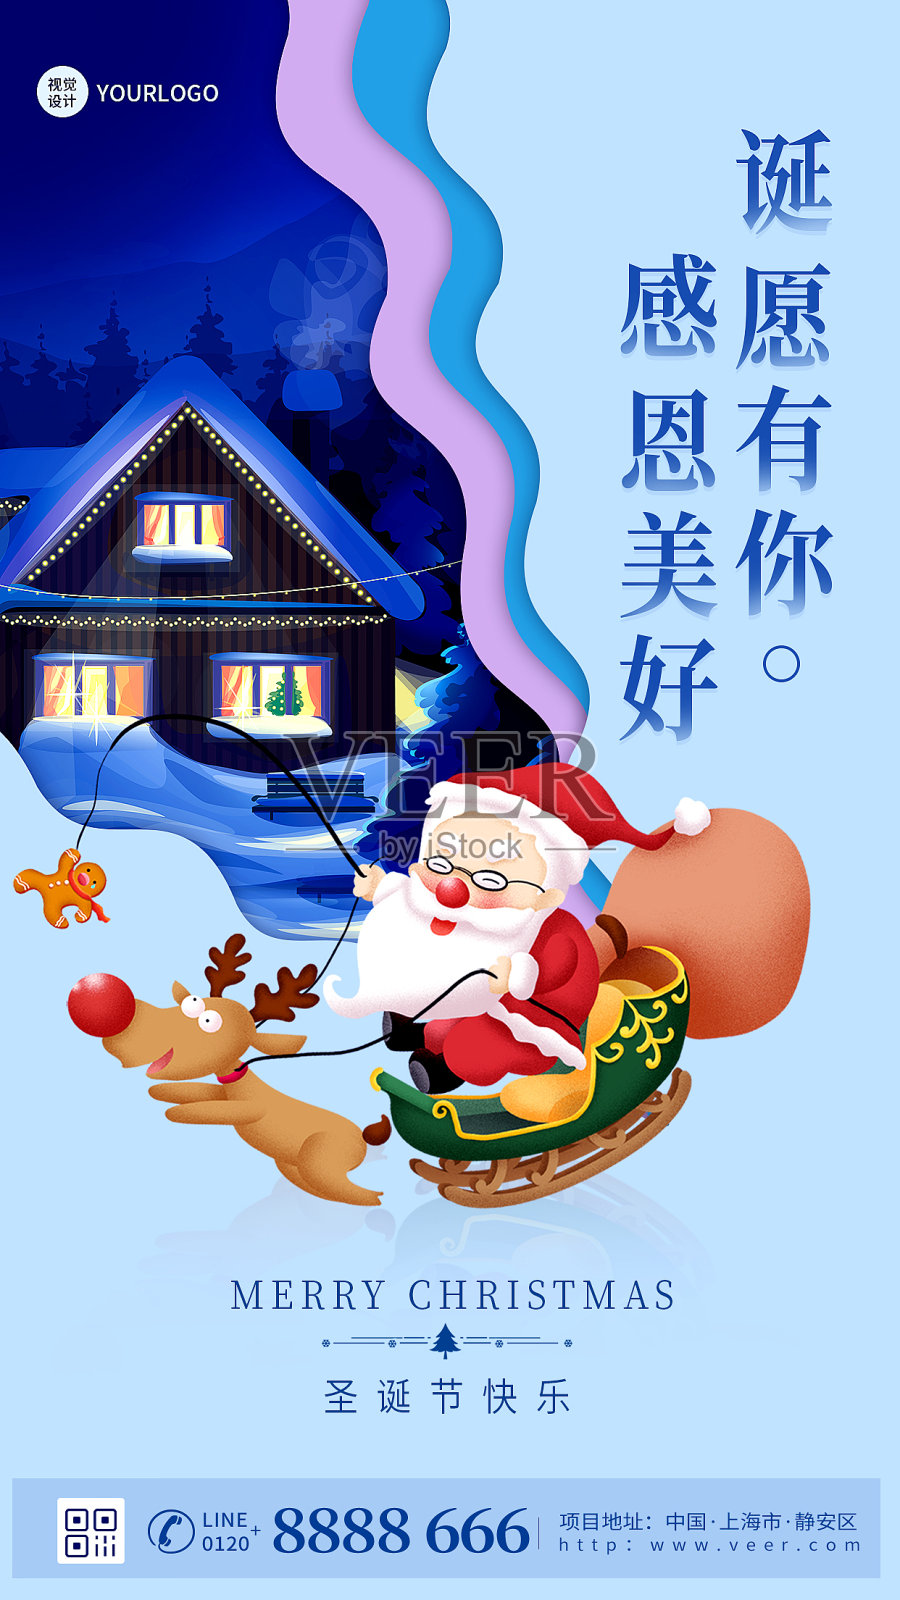 圣诞节祝福扁平简约插画风手机海报设计模板素材